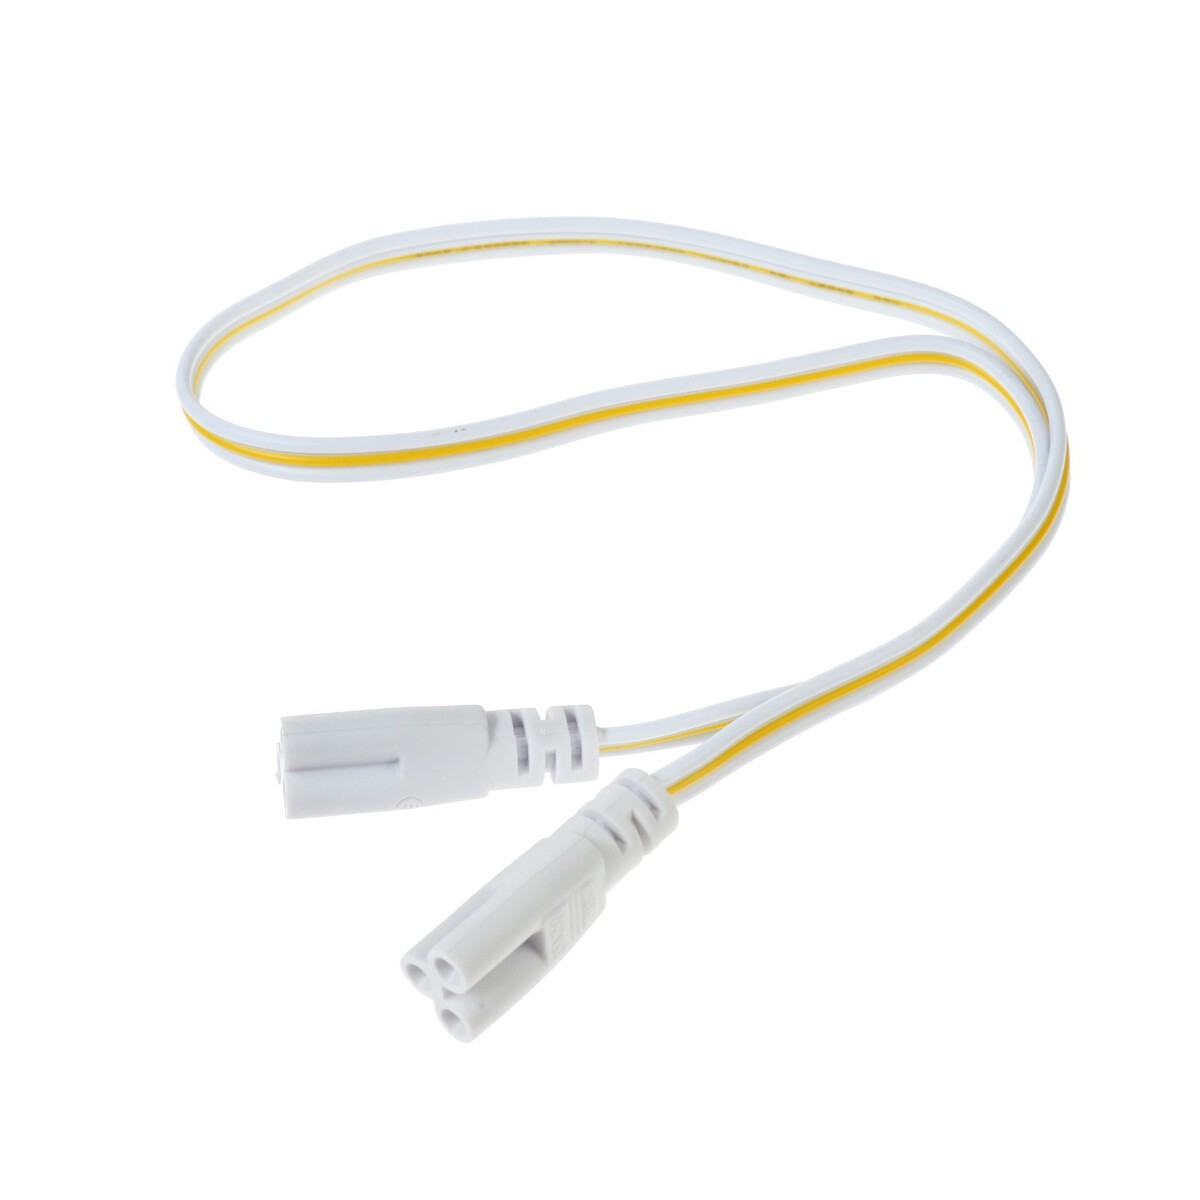 Провод соединительный для светильников, разъем l/n/g, 50 см, белый пенообразователь под воду объем 1 литр соединительный штуцер 12 мм